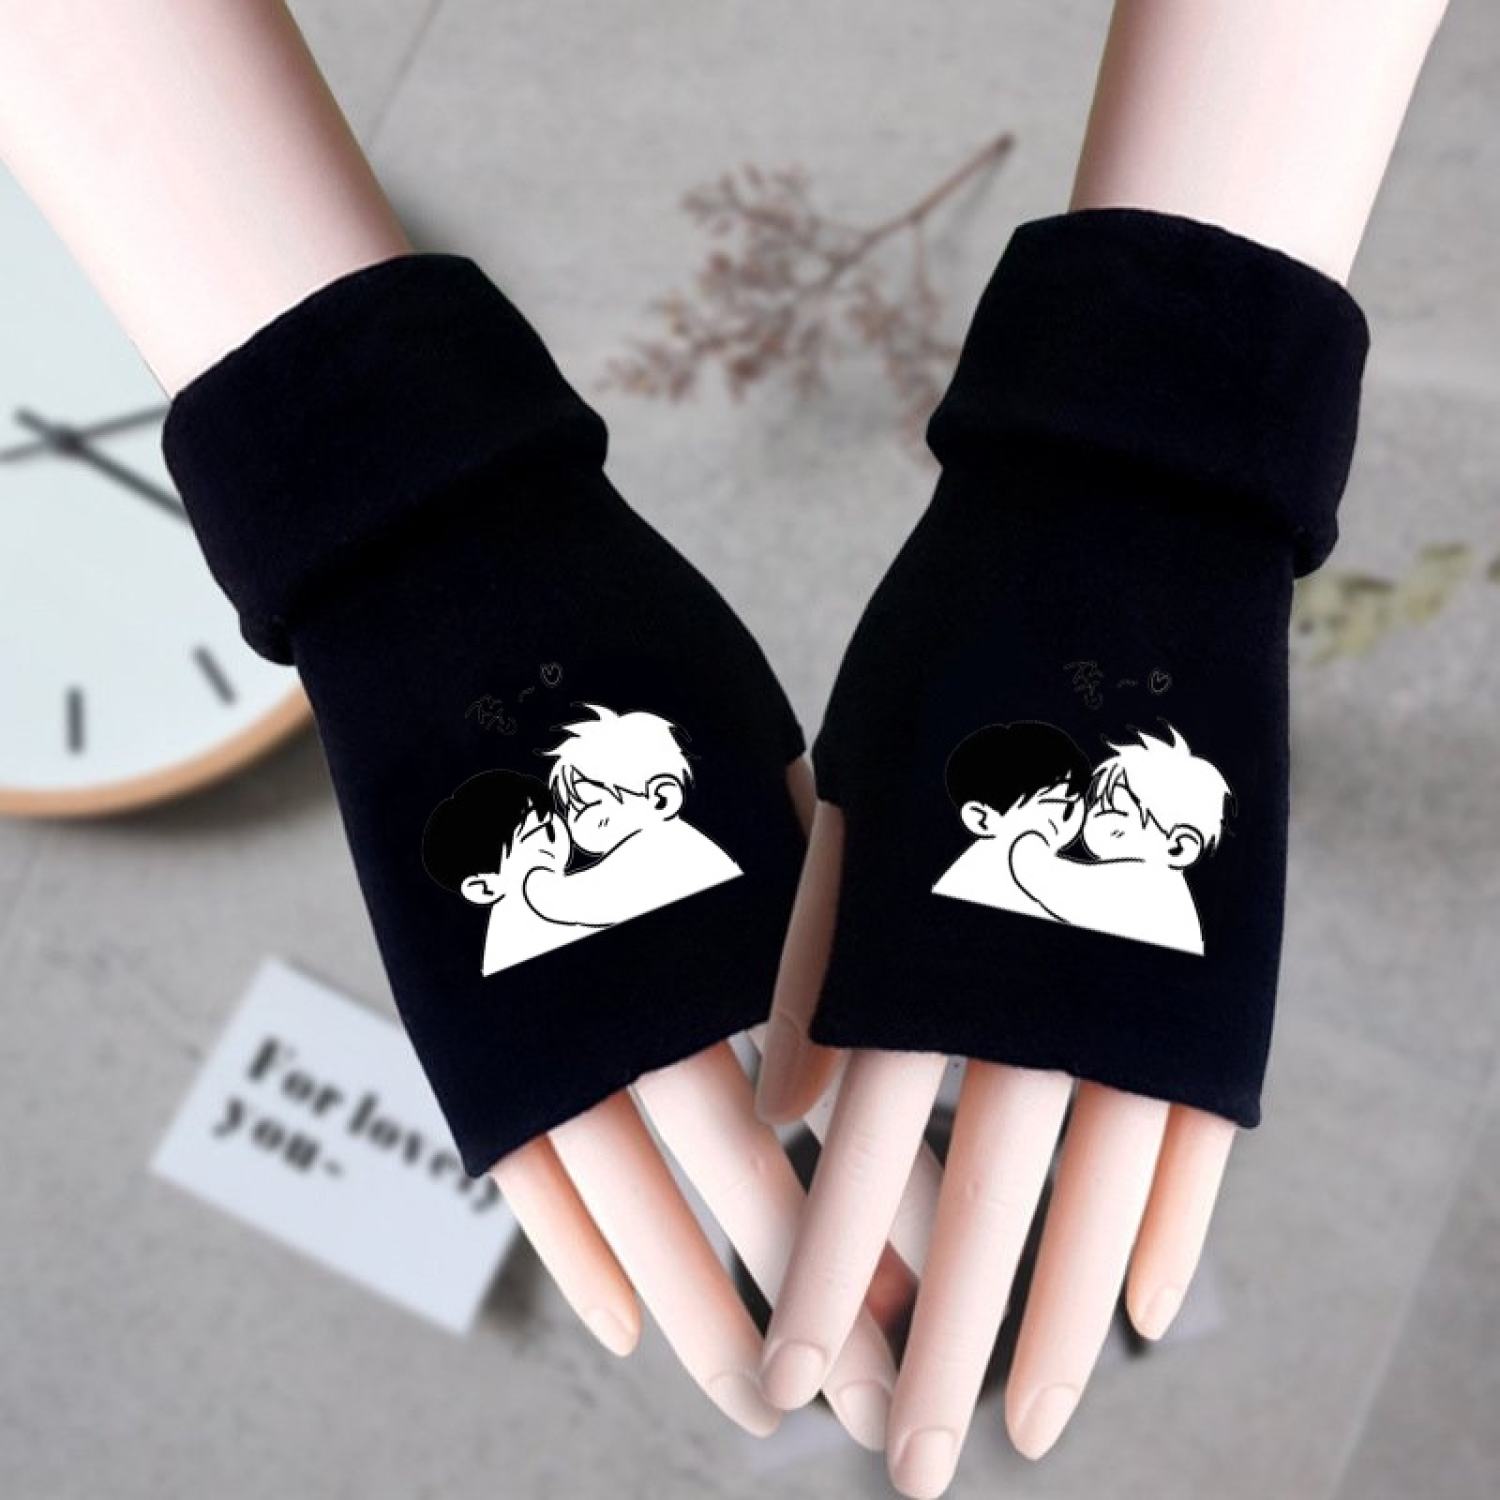 Găng tay len đen in hình CHECKMATE boylove manhwa chibi anime thời trang